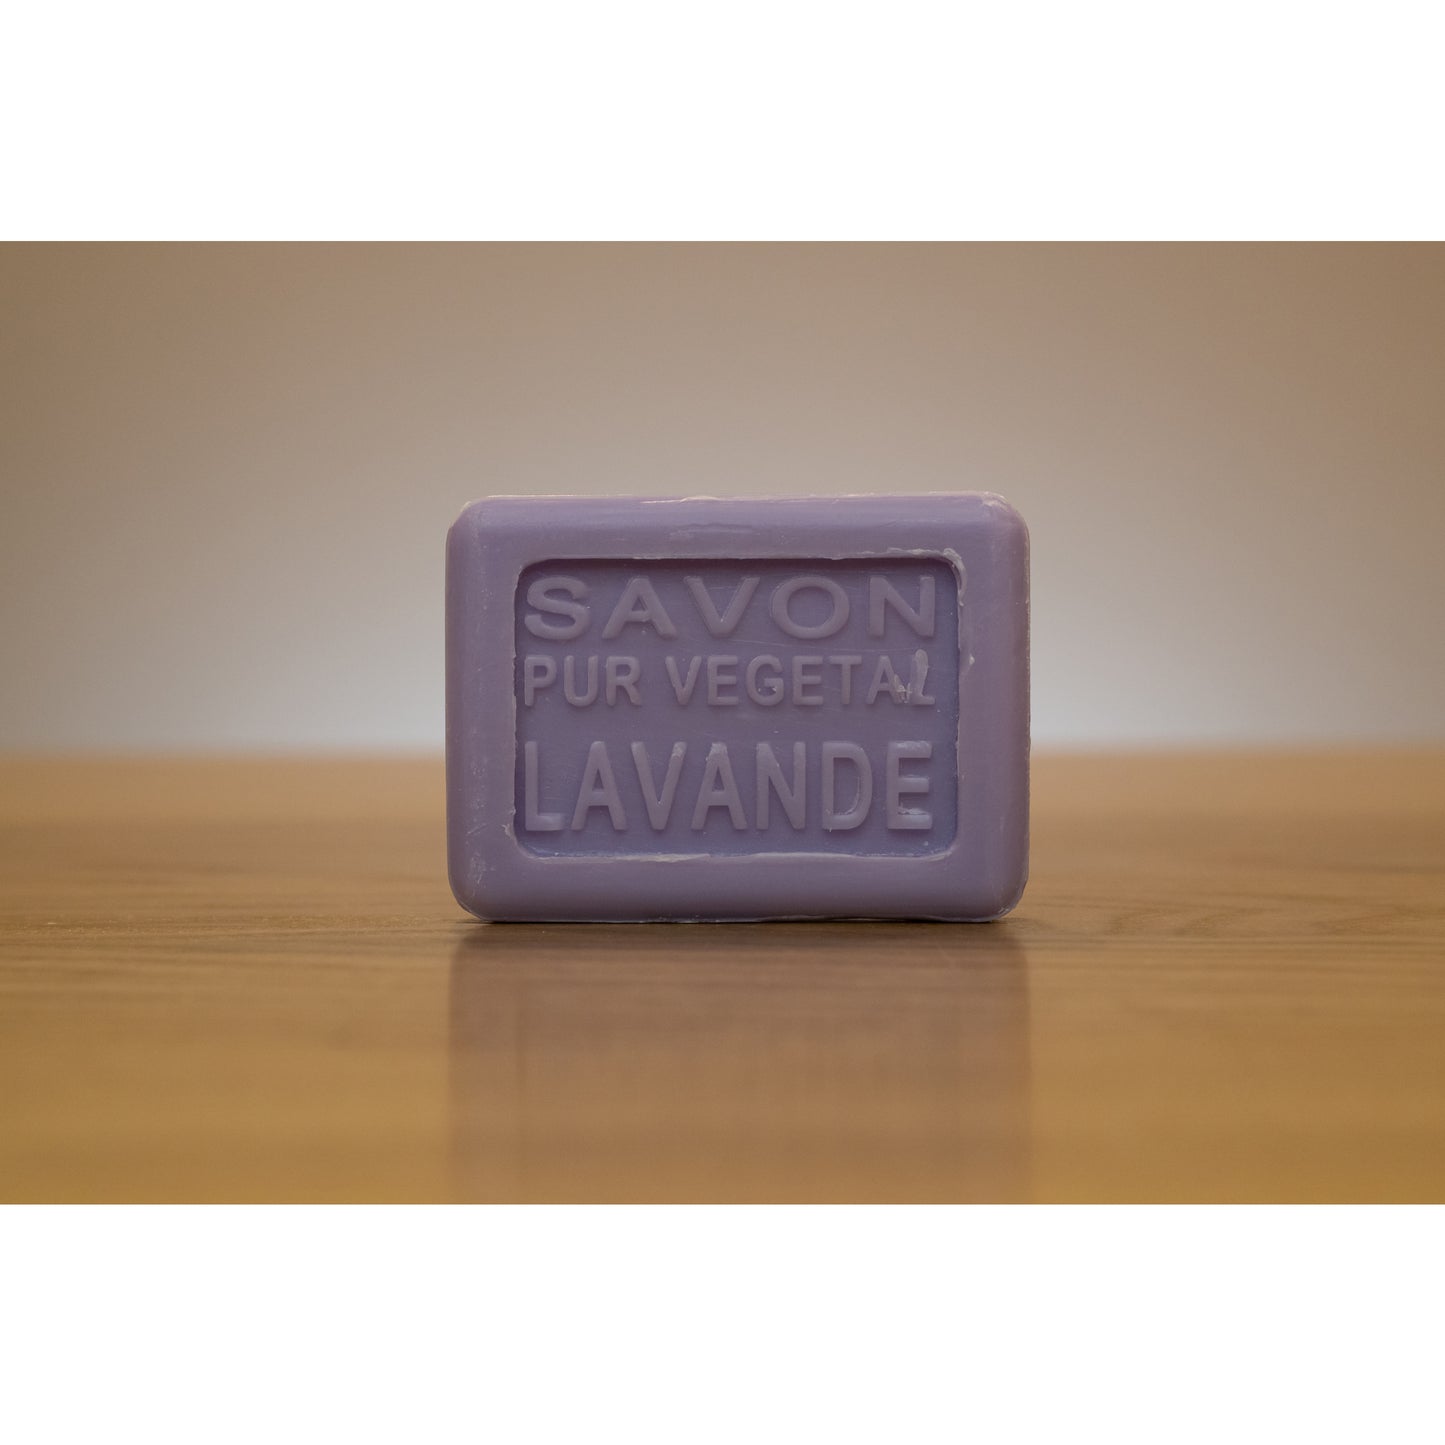 "Provençal Landscape" Lavender Guest Soap, 0.88oz - La petite France Vilnius - Soap